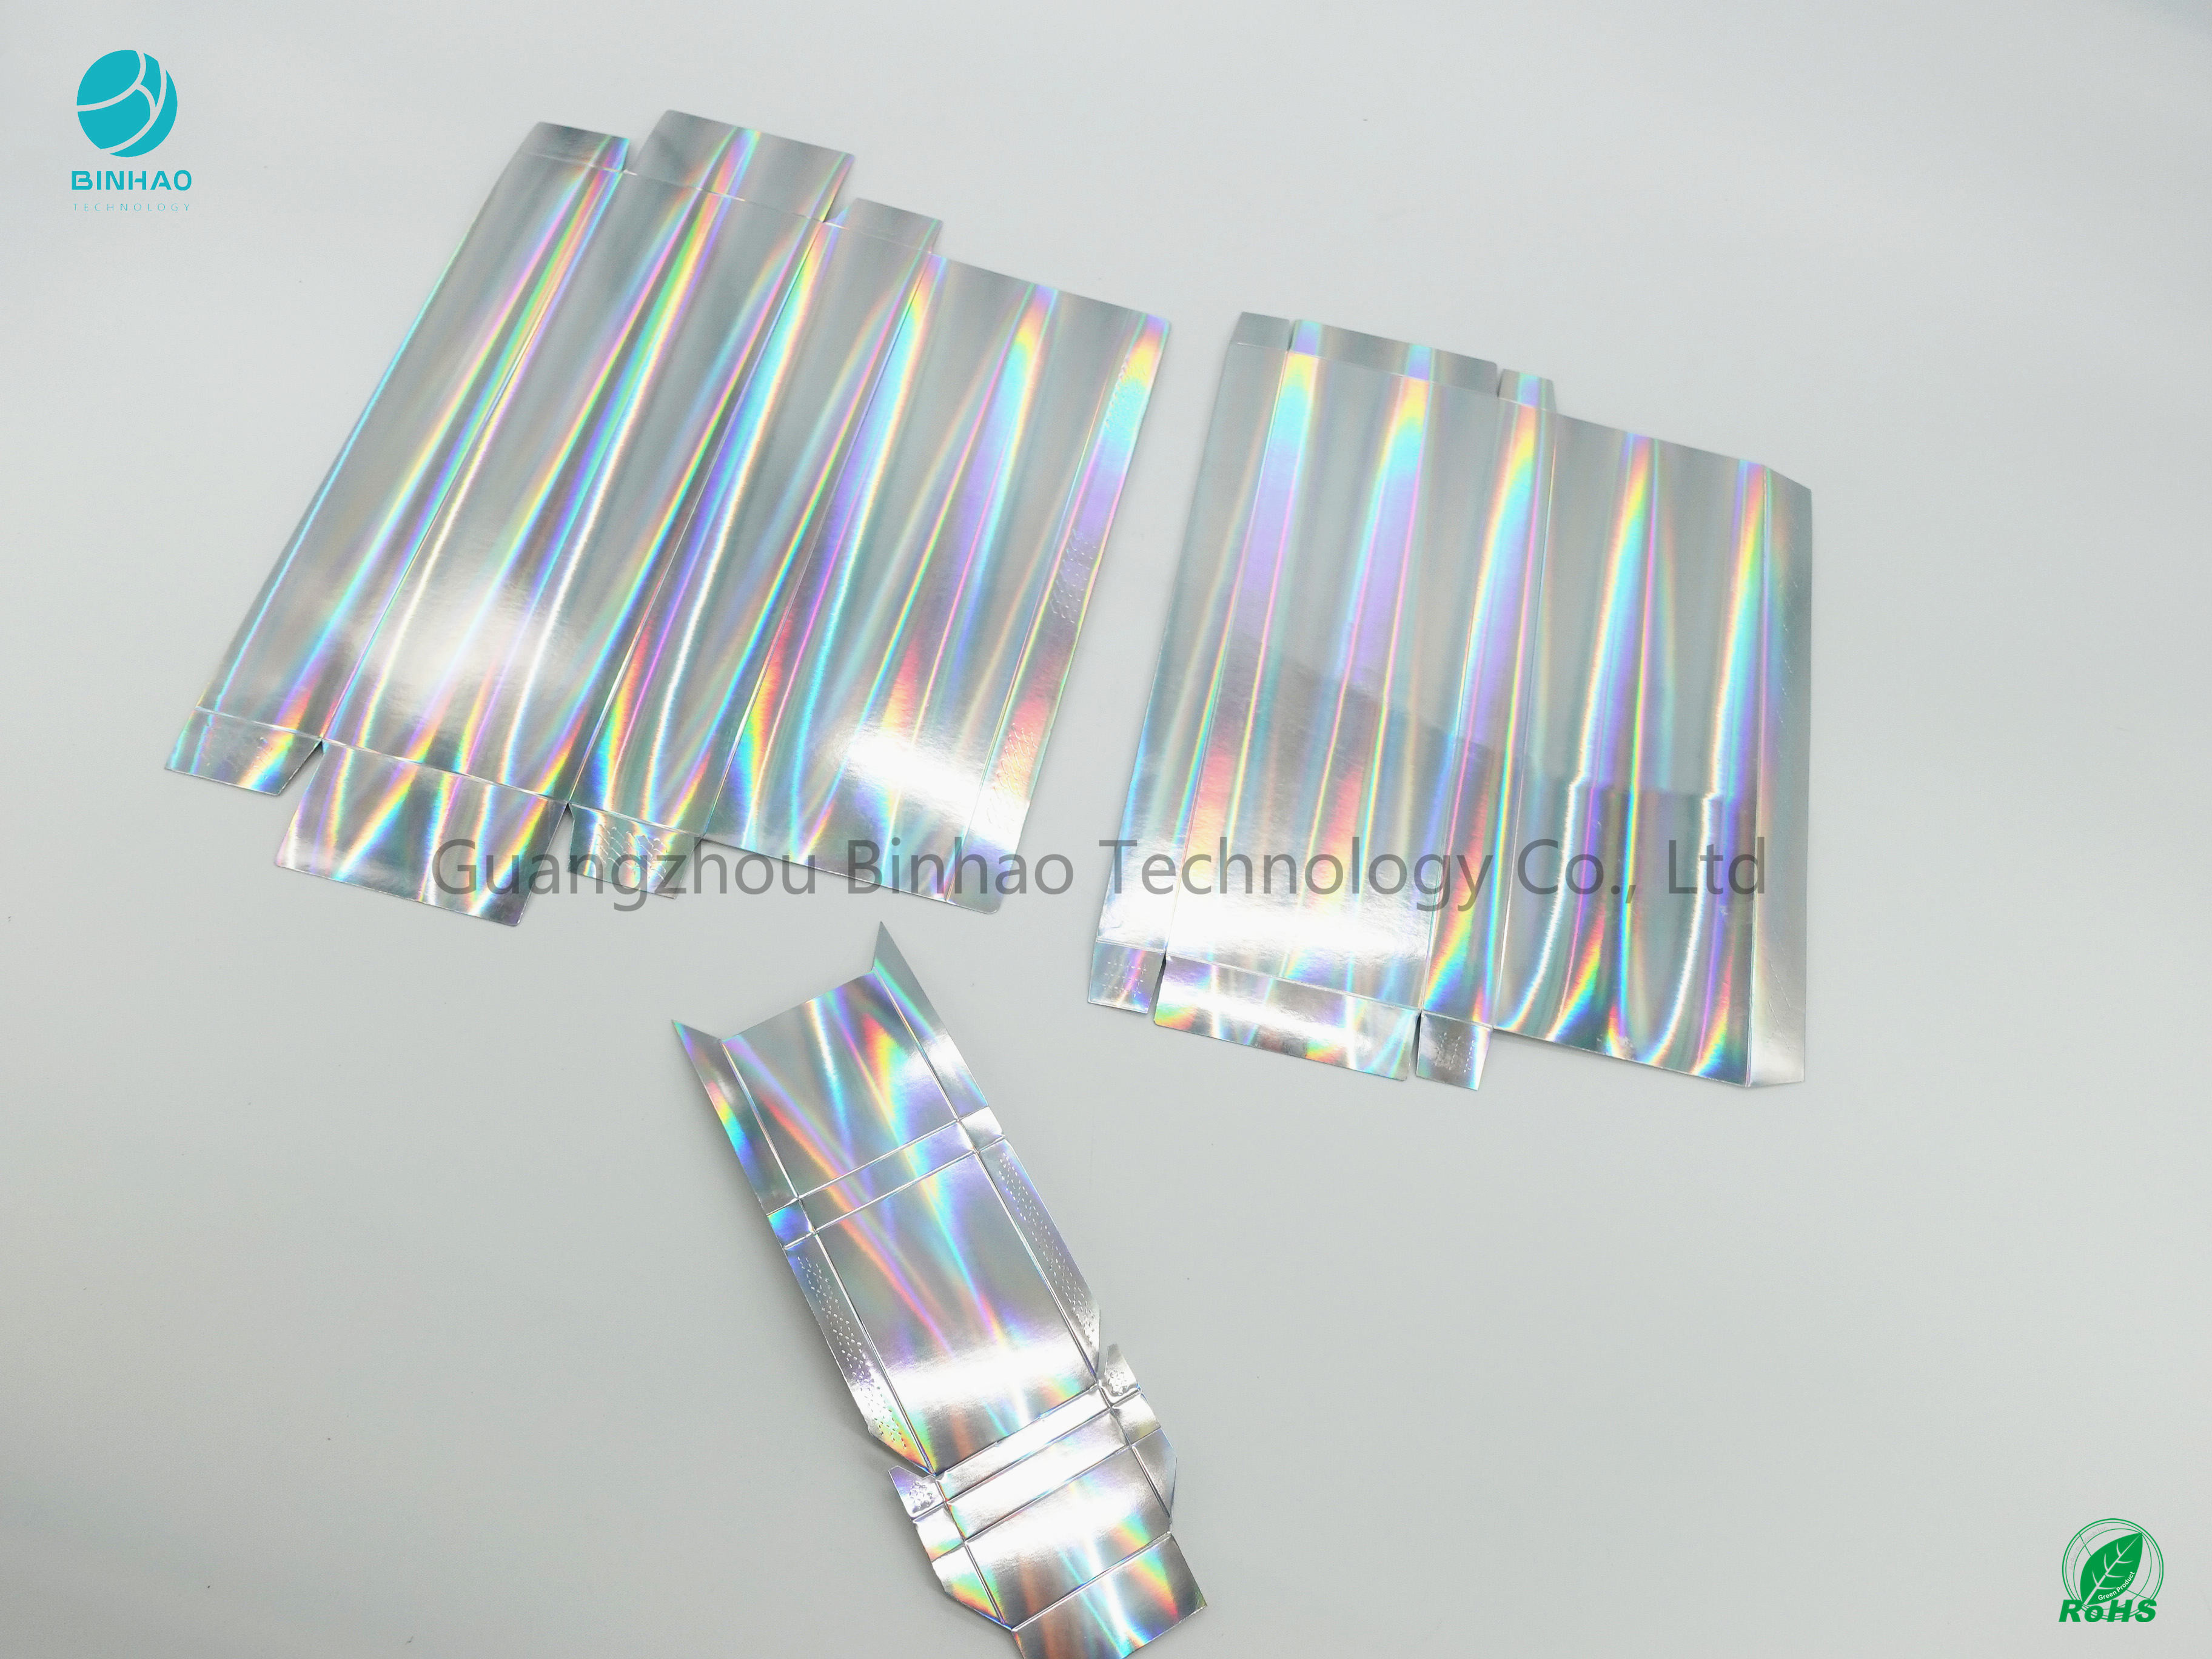 Caixas de cigarro do cartão que brilham o carimbo de superfície do holograma da lisura ≥200